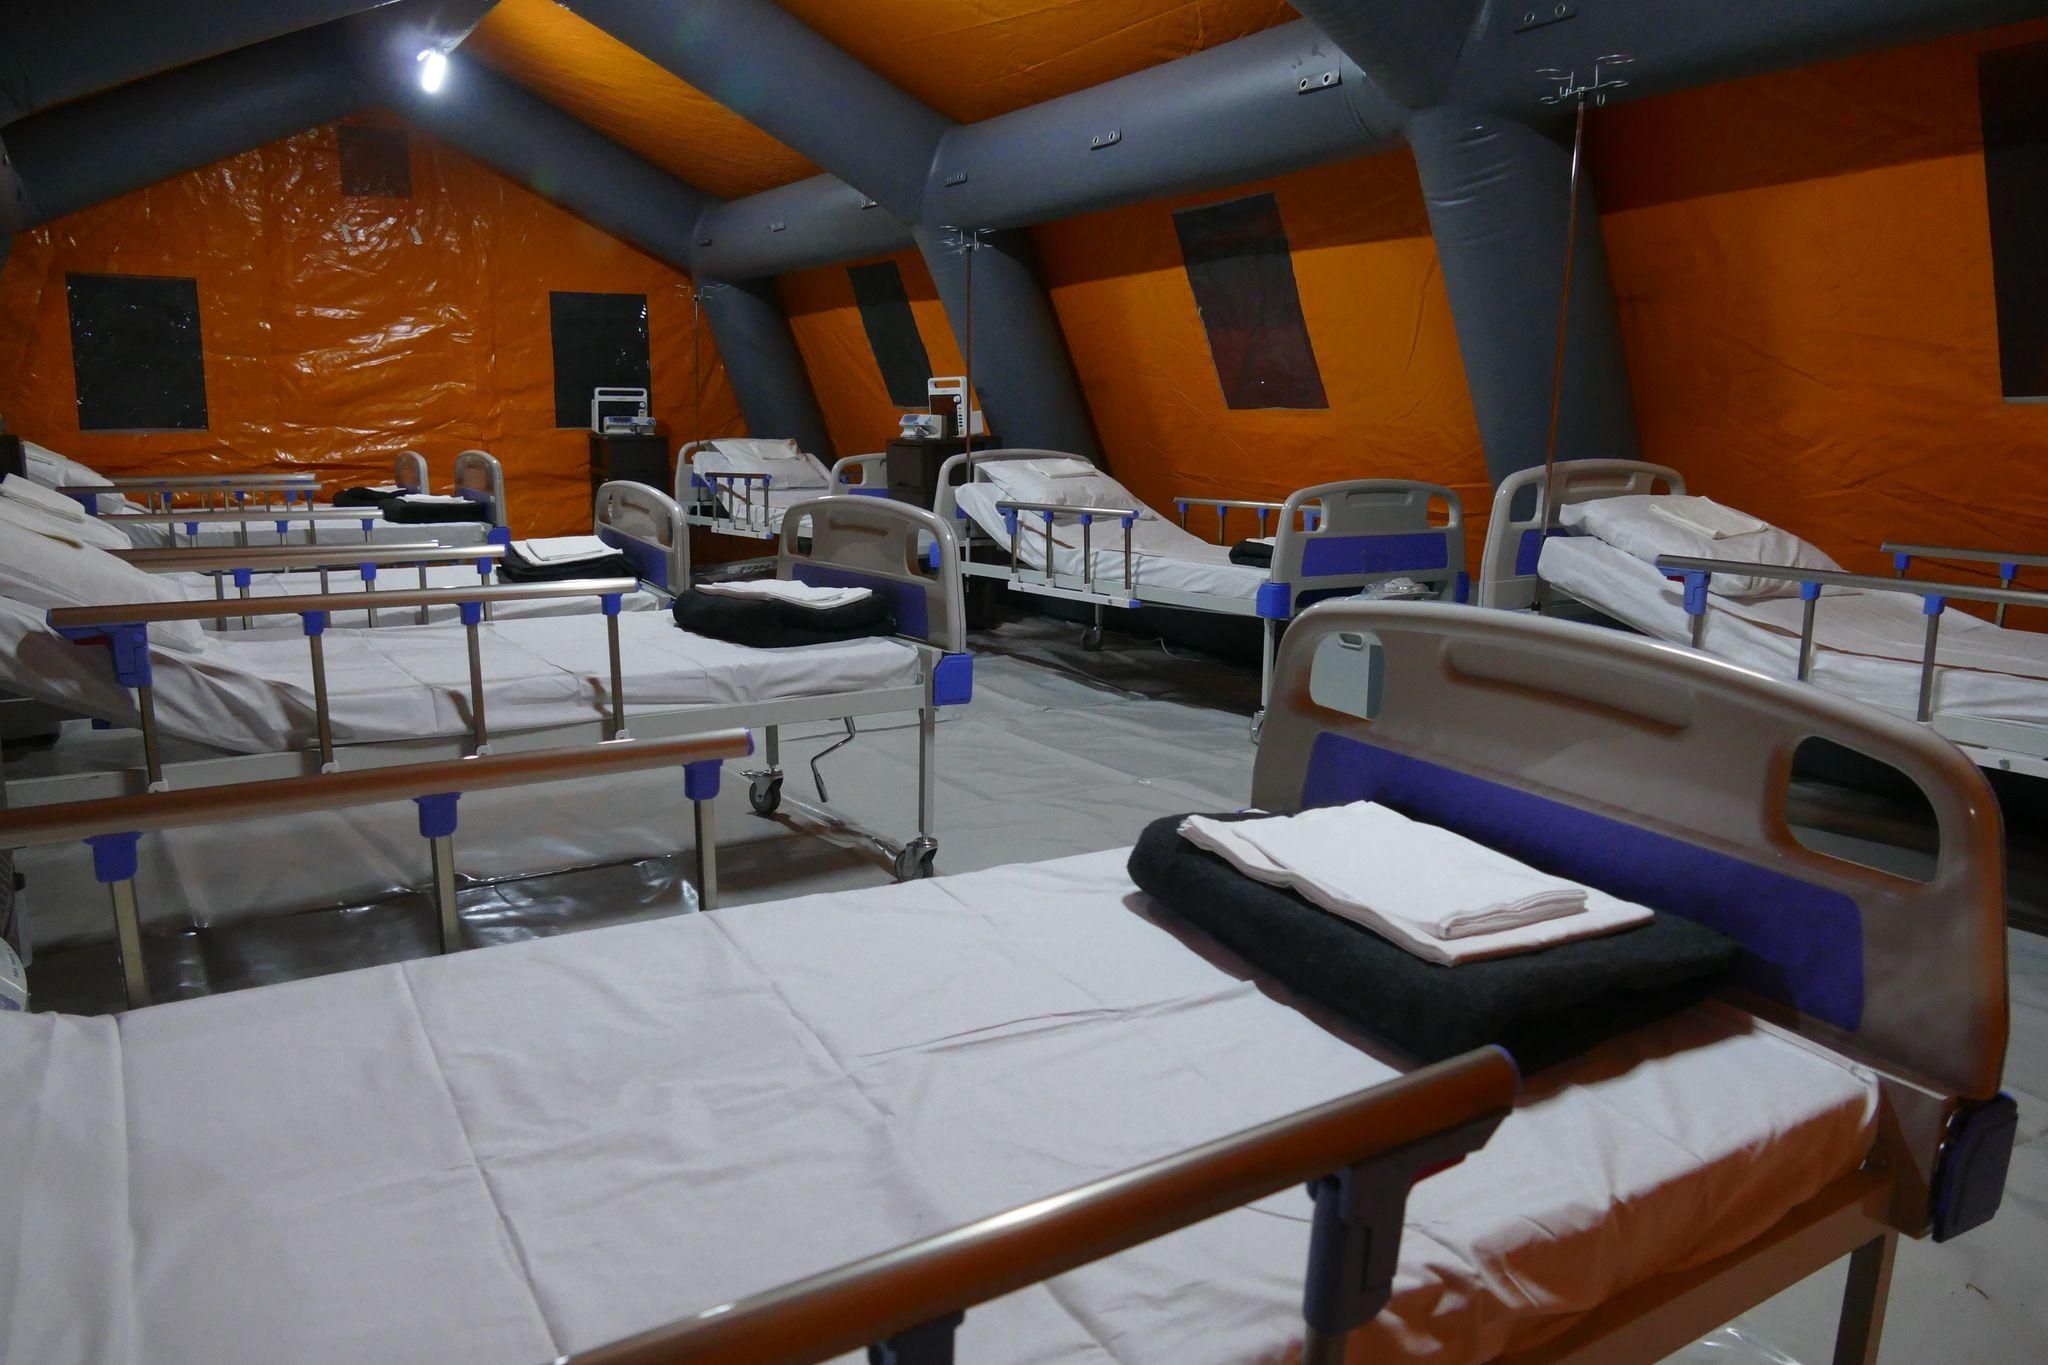 Ще в одному місті України розгортають мобільний госпіталь для COVID-хворих 